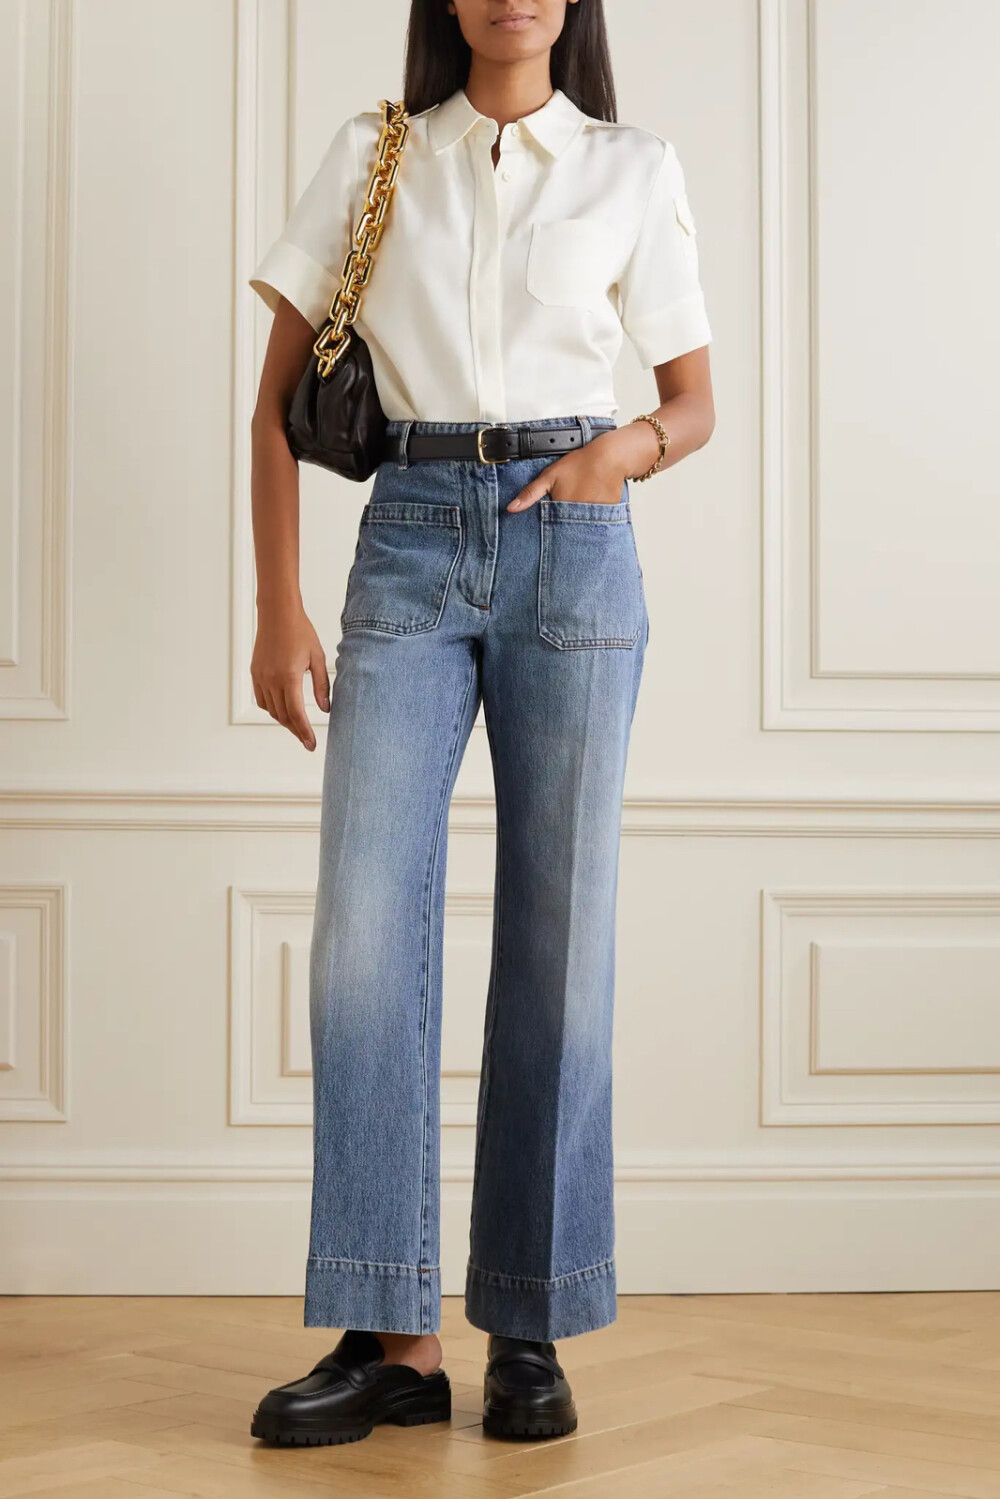 Victoria Beckham 的 “Alina” 牛仔裤版型独具一格，迅速成为了品牌人气作品。这一版本采用蓝色丹宁布，高腰阔腿裤身上带有实用主义风贴袋。不妨将衬衫掖入裤腰，再搭配高跟鞋。